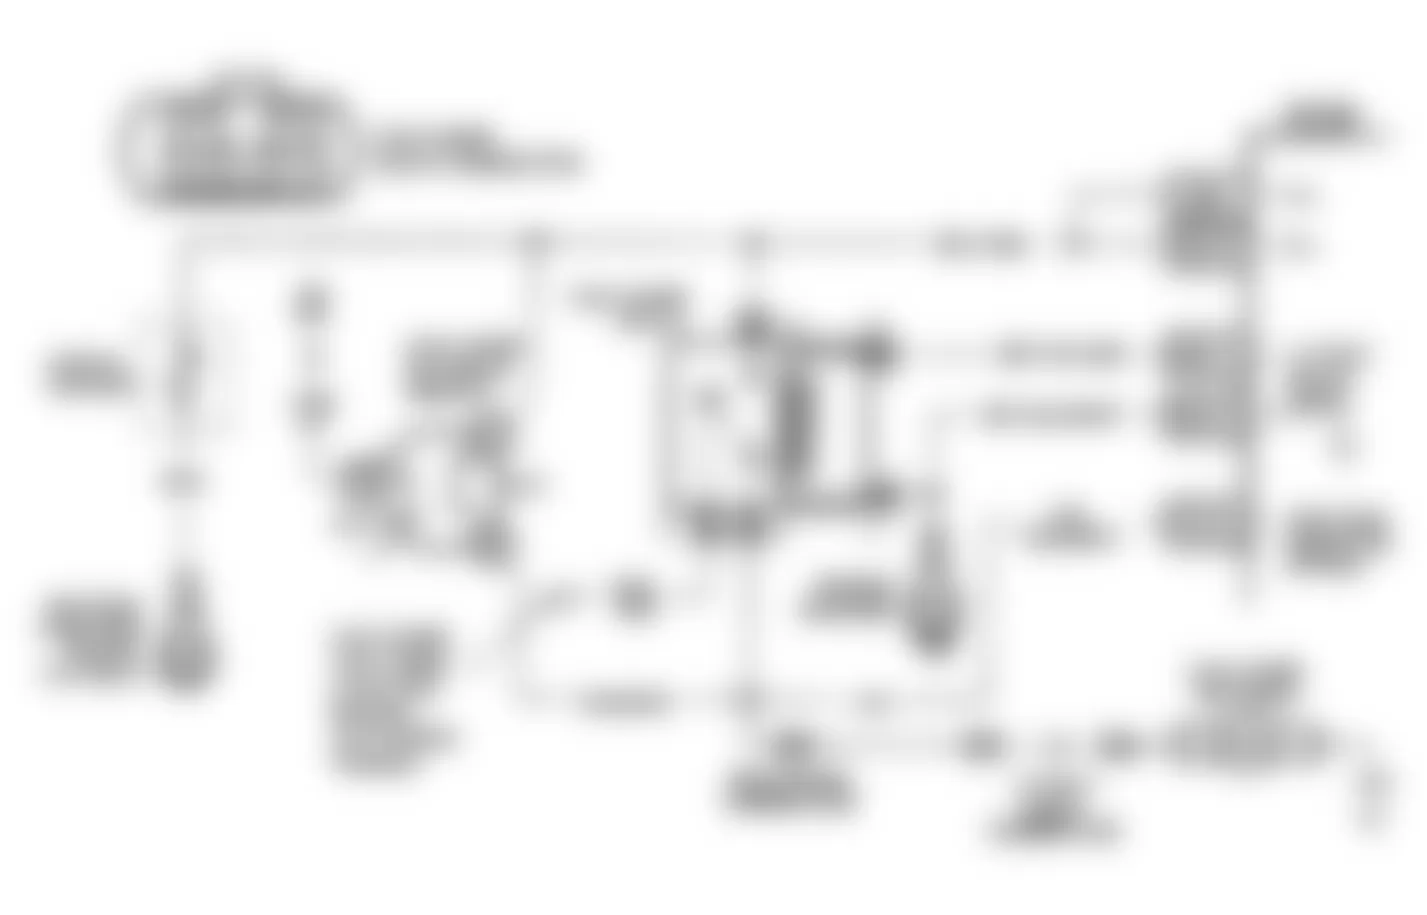 Buick Regal Limited 1990 - Component Locations -  Code 54: Fuel Pump Volt Low Schematic (L Body)